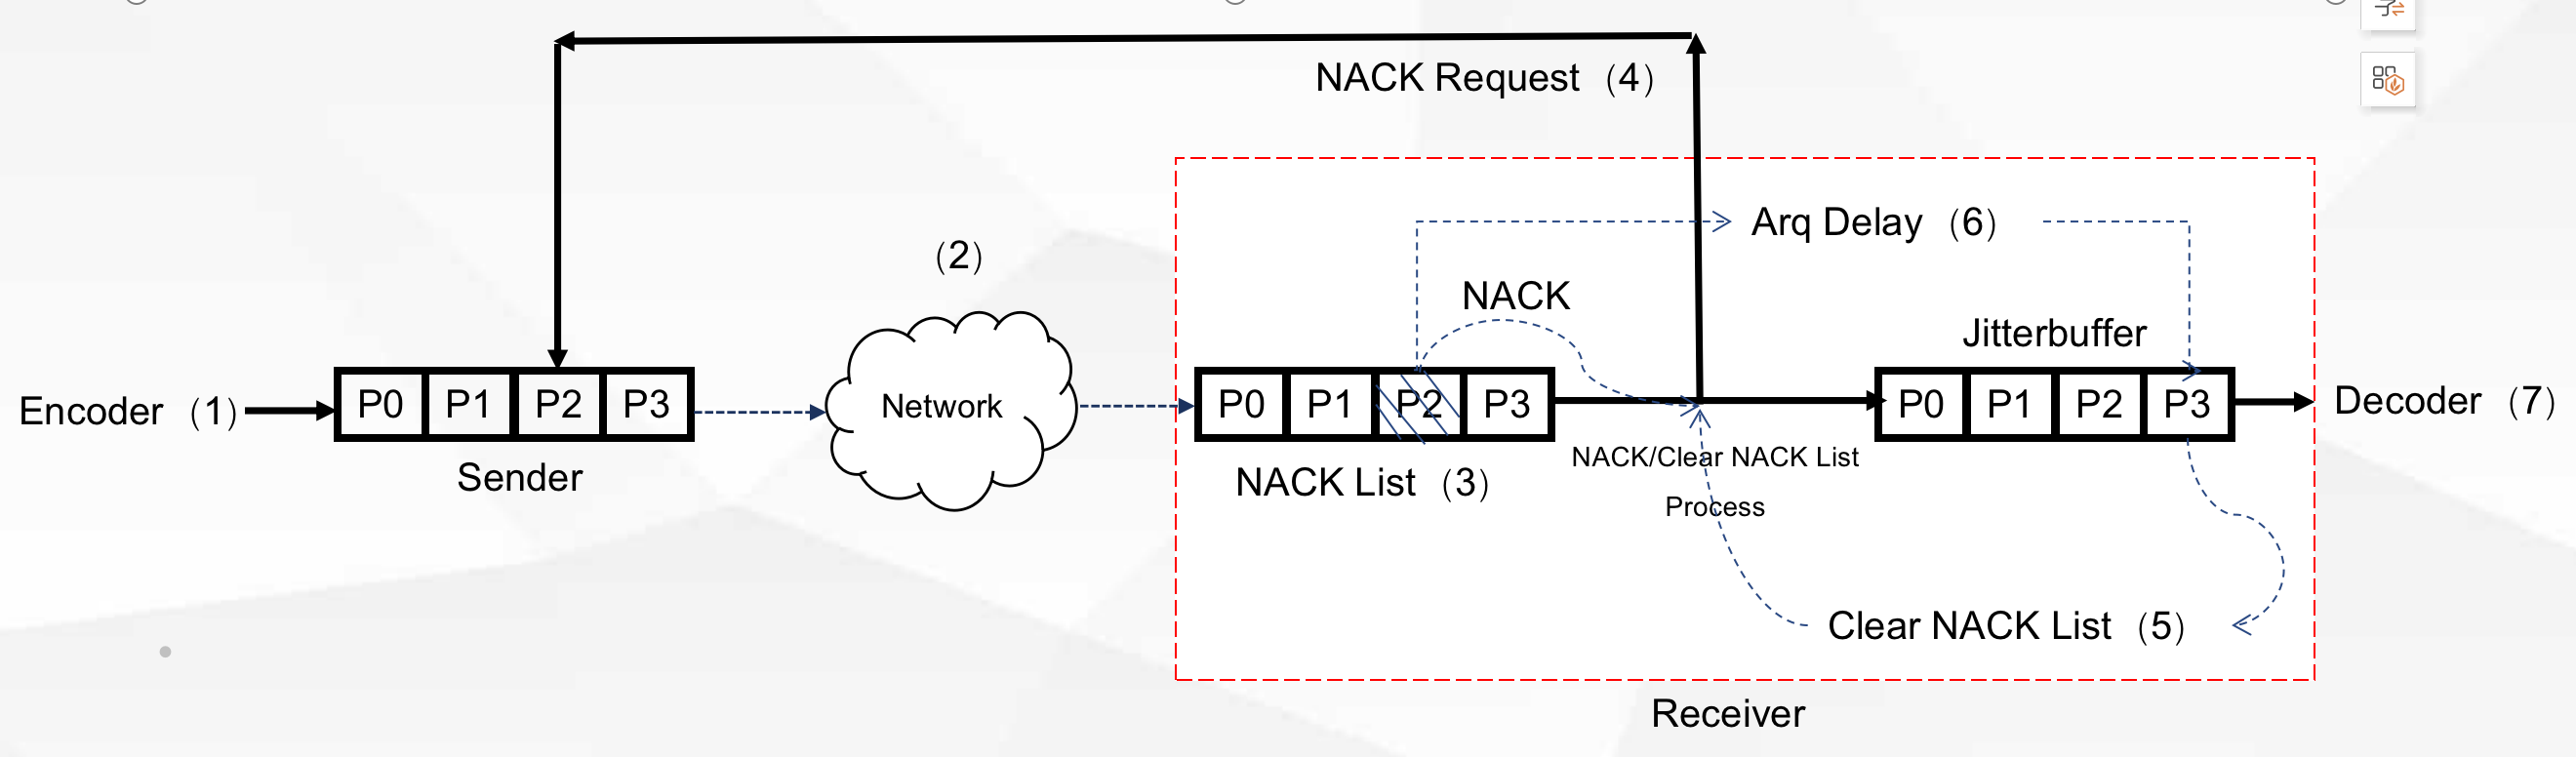 图5 发送端和接收端的 NACK 请求和重传示意图